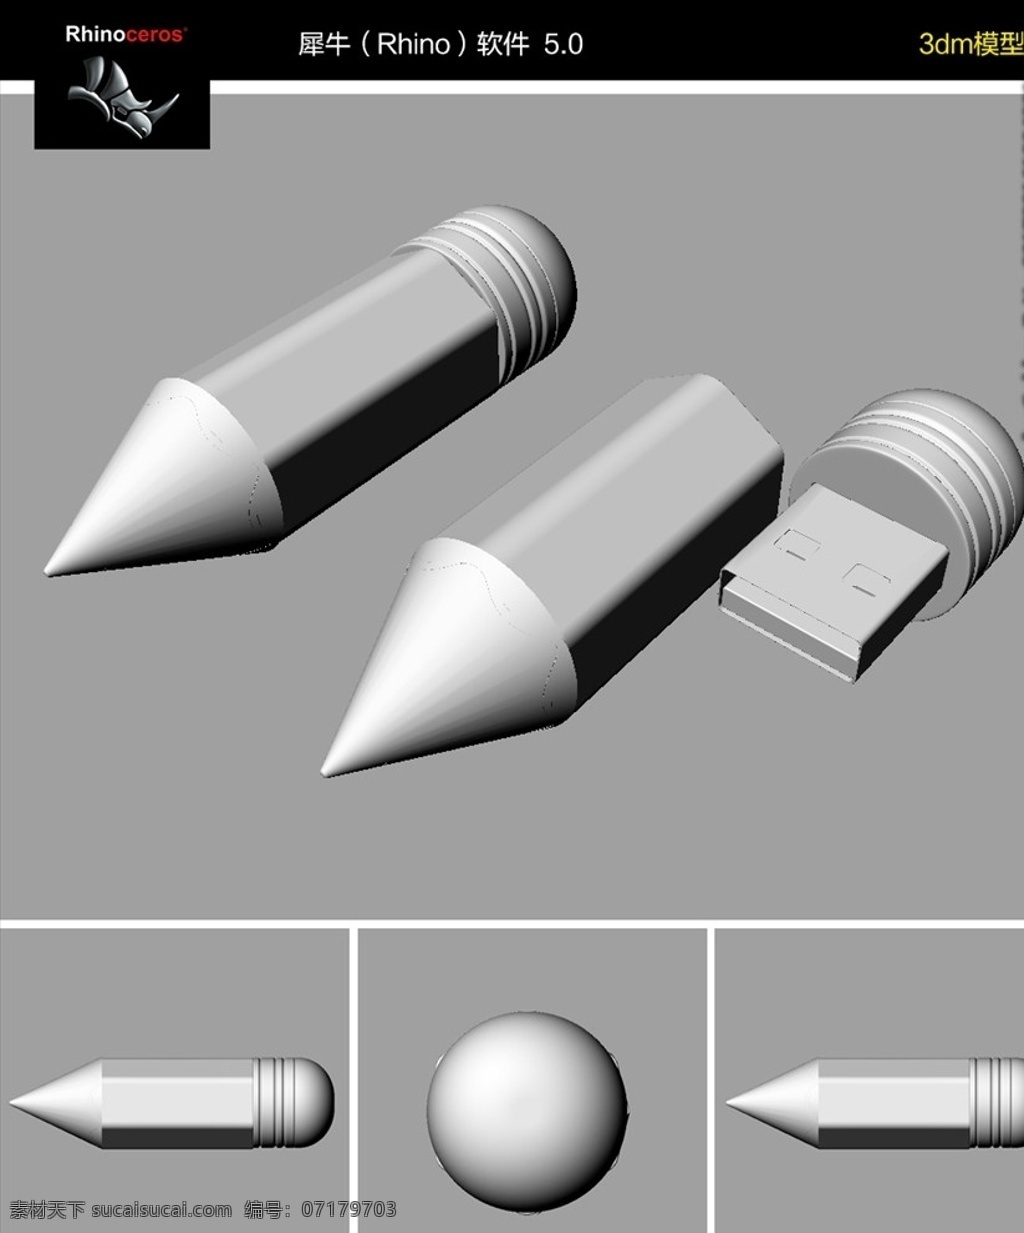 铅笔 形 u 盘 优盘 铅笔形u盘 创意优盘设计 工业设计 产品造型设计 rhino 模型 犀牛软件建模 3d设计 3dm